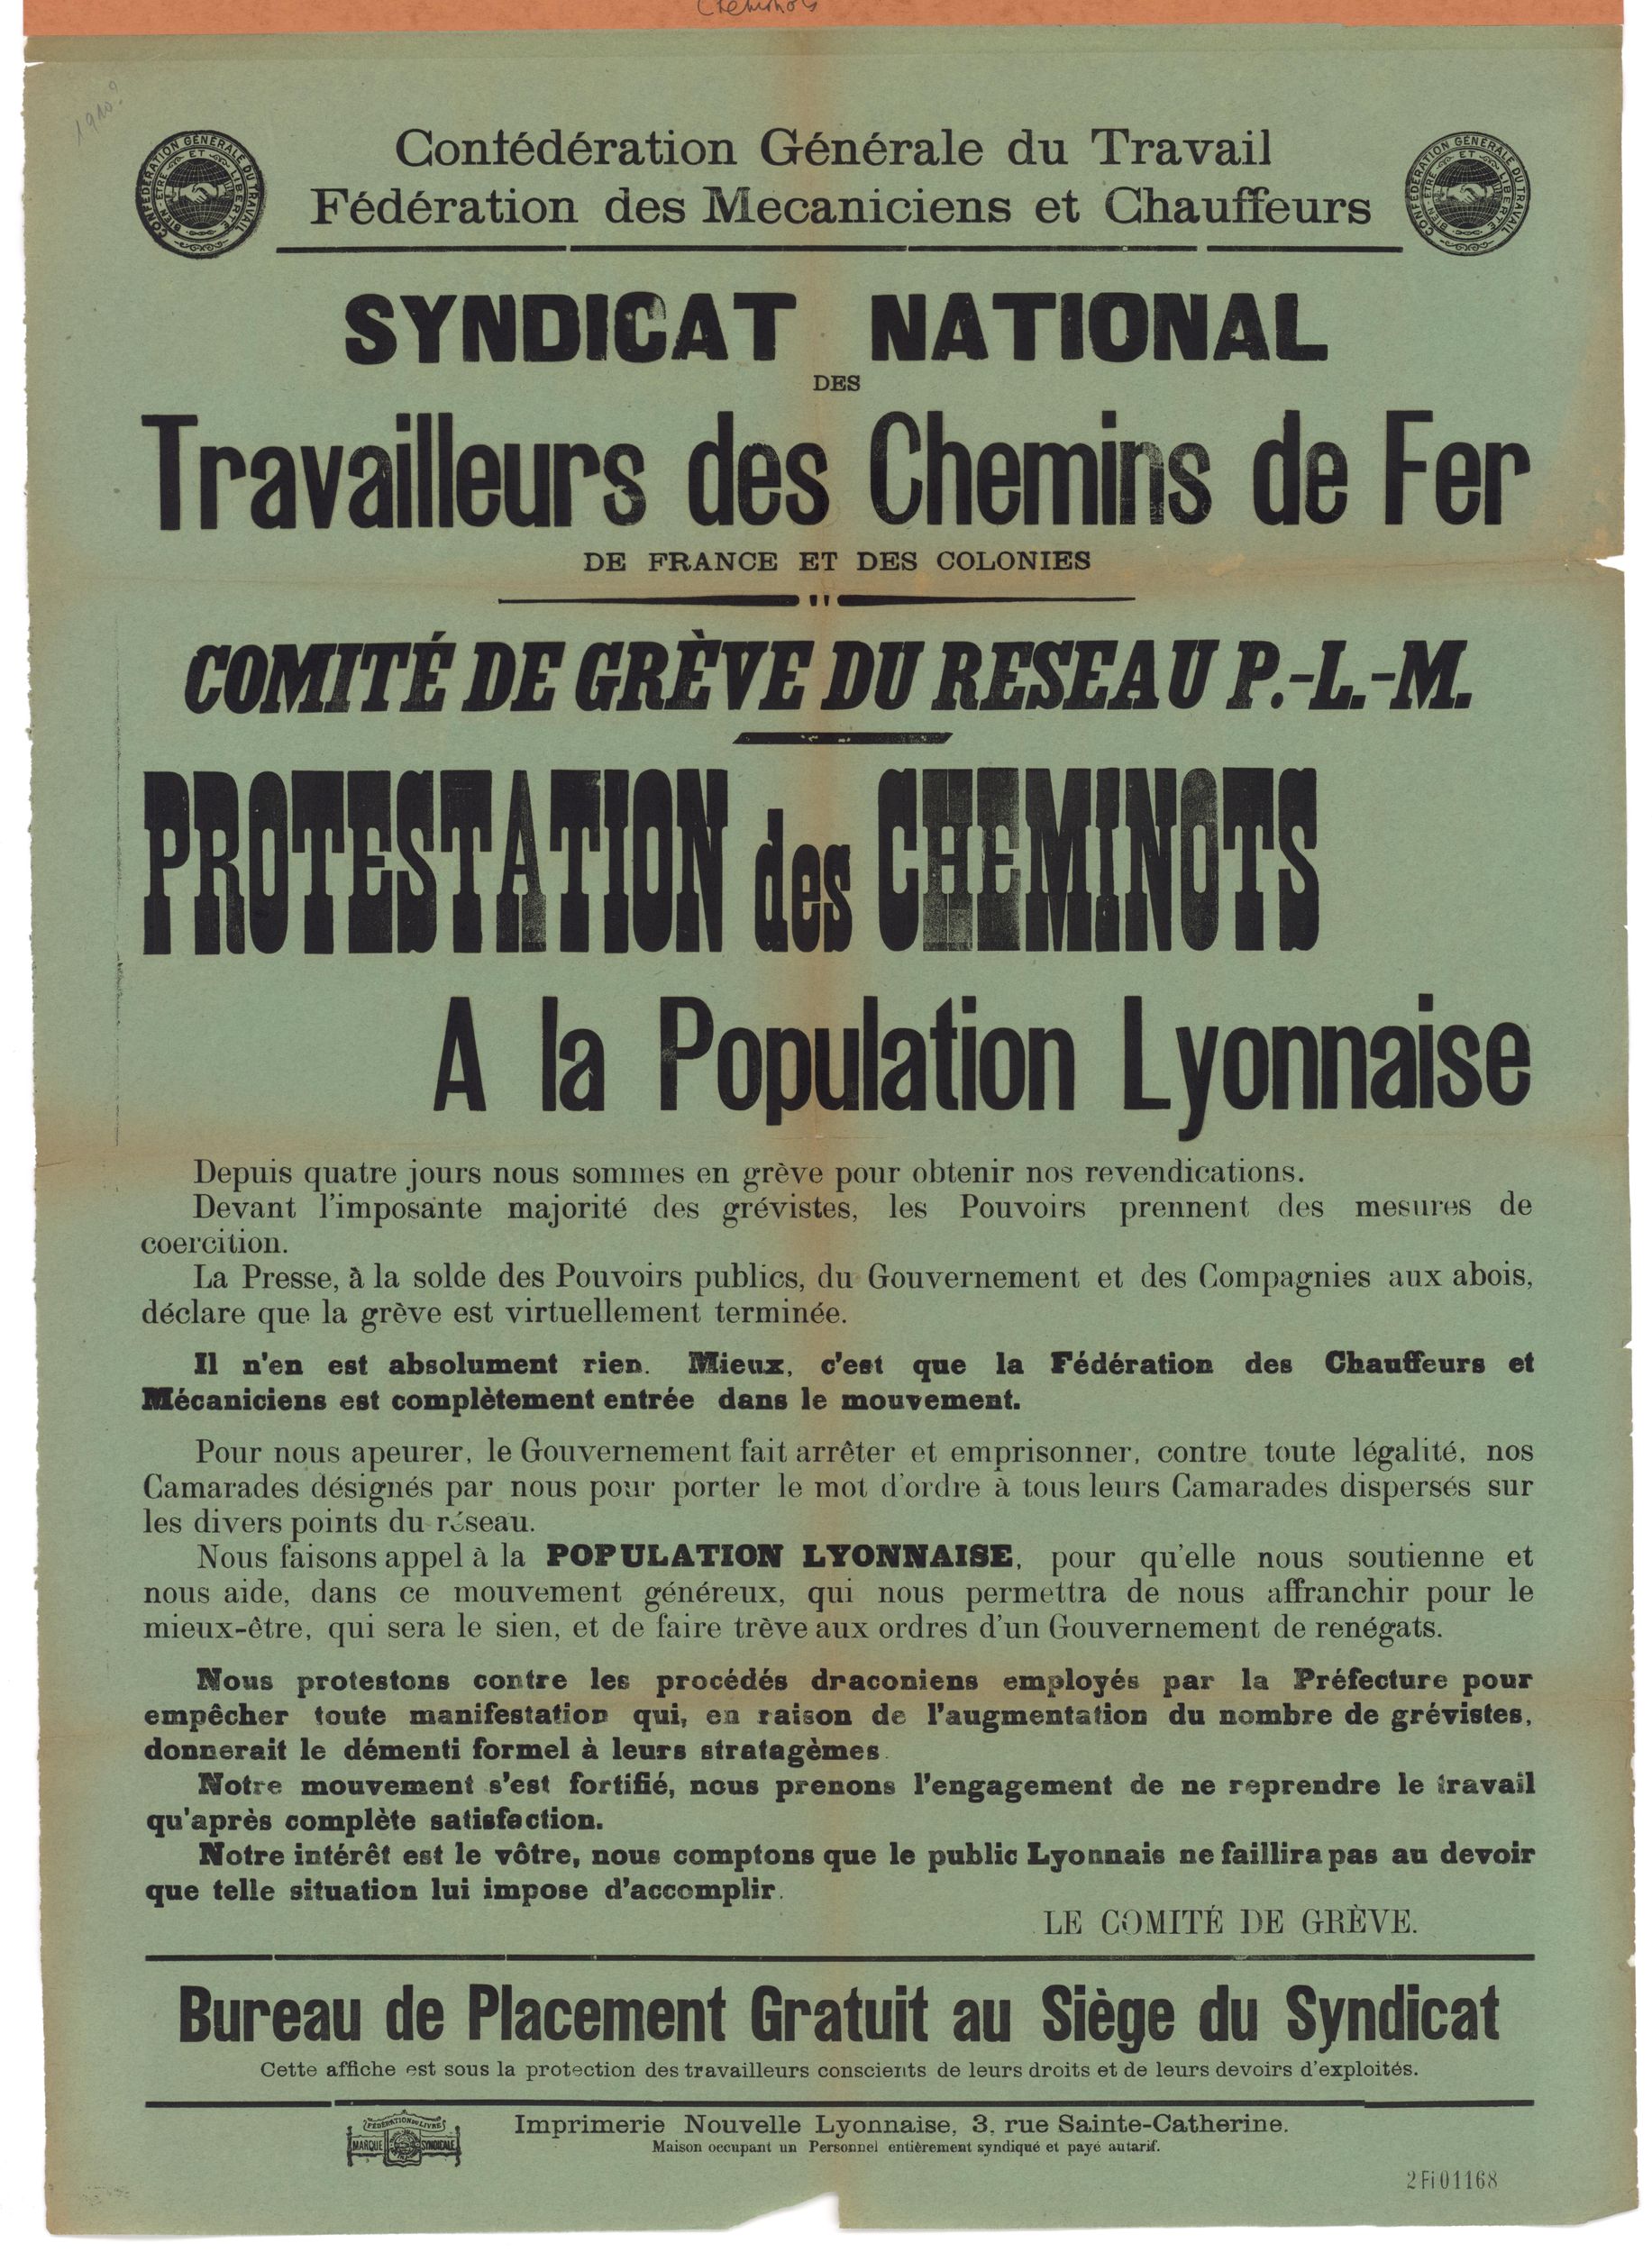 CGT - Syndicat national des travailleurs des chemins de fer, protestation des cheminots : affiche syndicale (1910, cote : 2FI/1168)